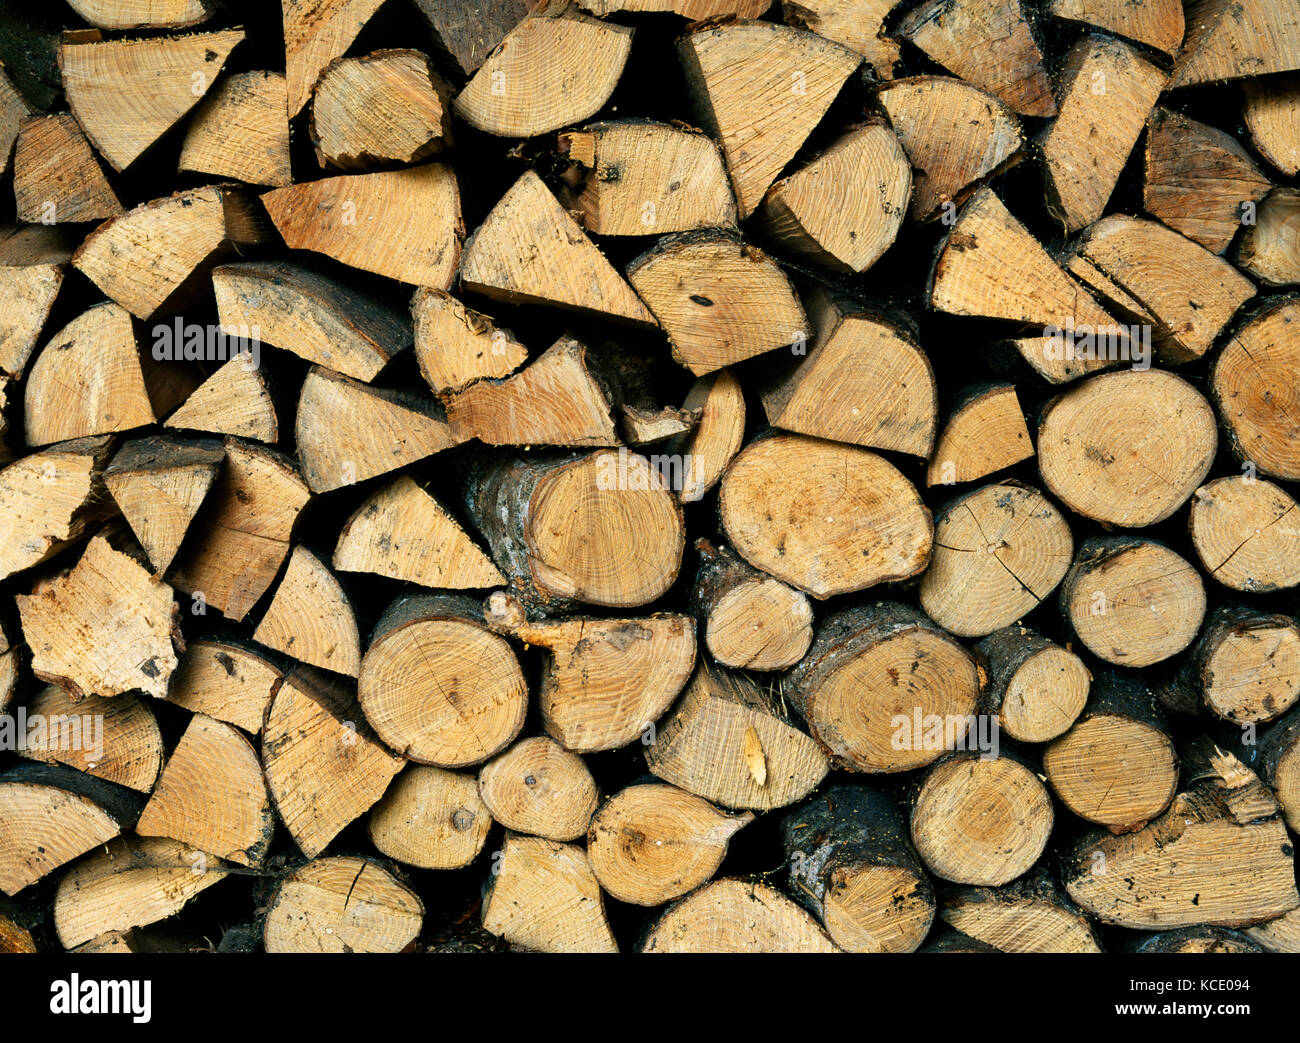 Stapel von selbst angebauten abgelagertem Brennholz; eine Mischung aus Hartholz. Die größeren Stücke aufgeteilt in überschaubaren Größen und die kleineren Links als Umläufe Stockfoto